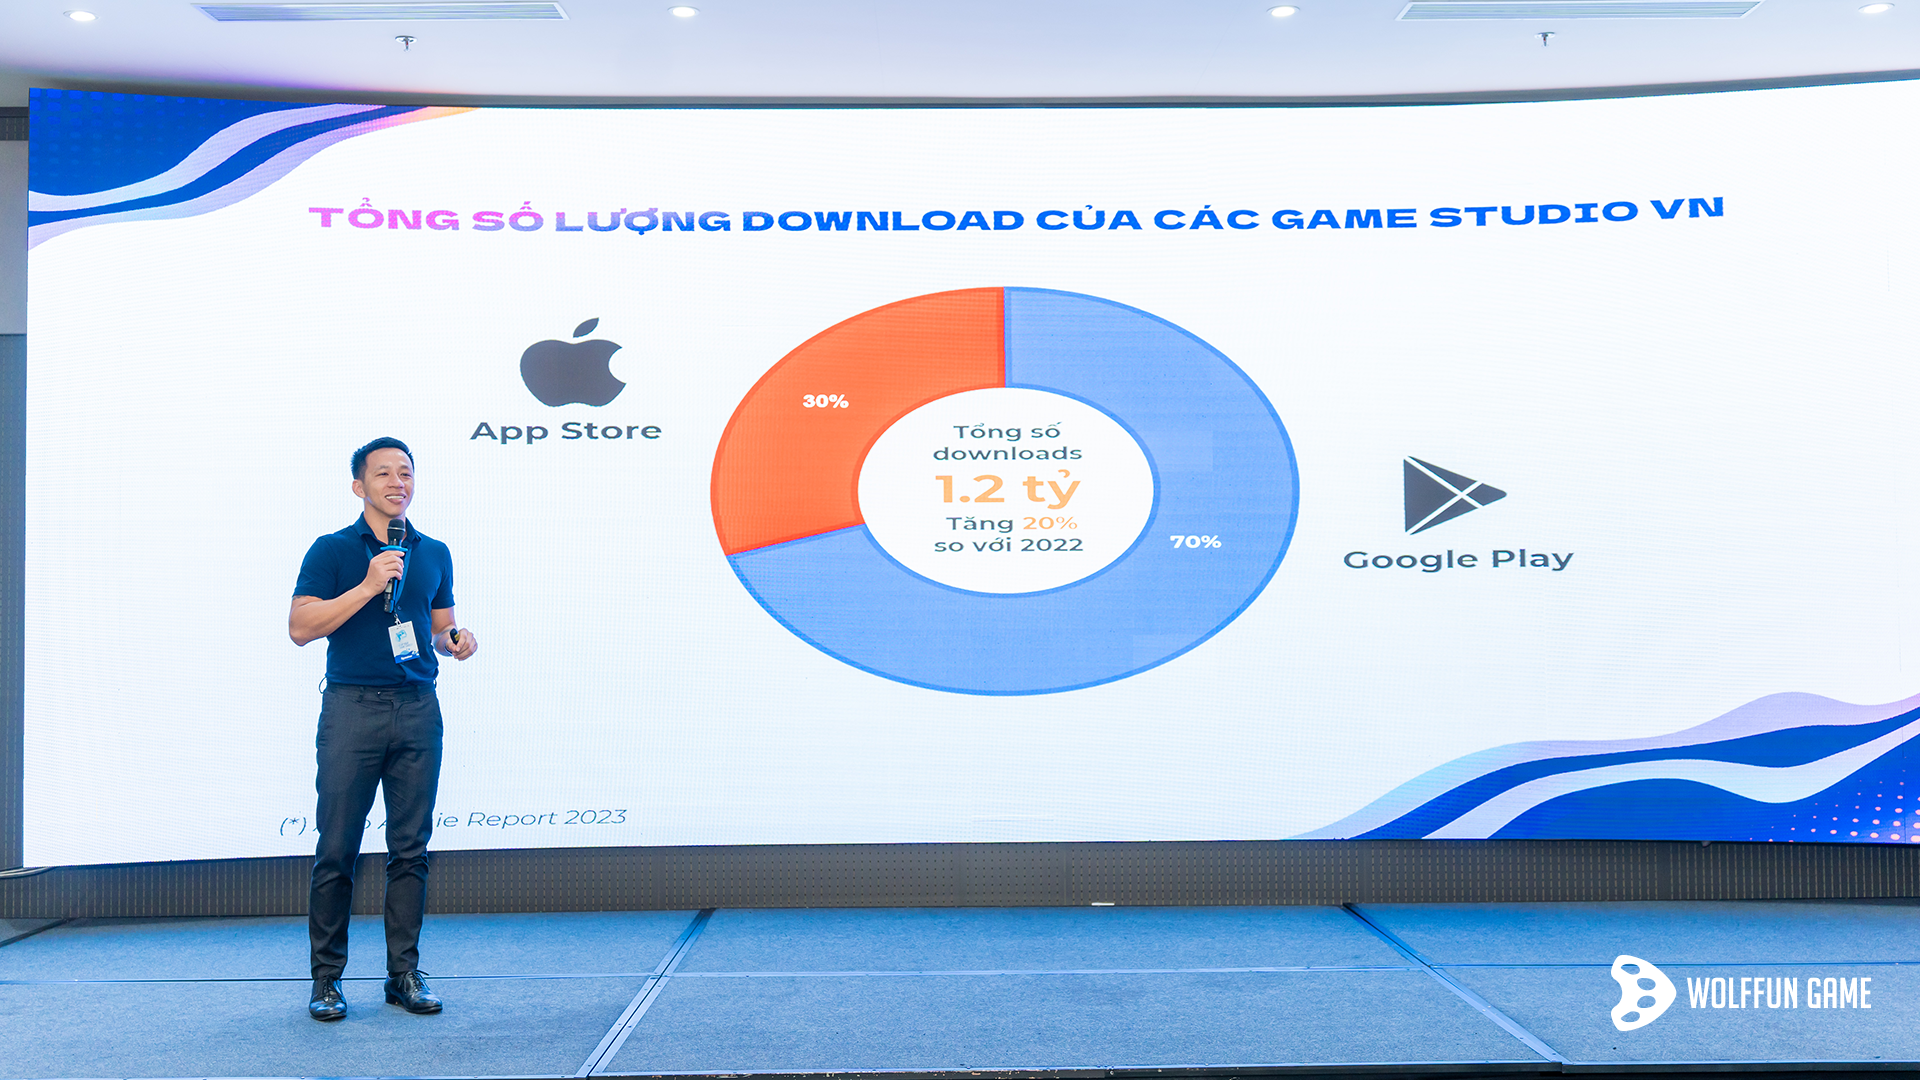 Anh Nguyễn Đình Khánh - CEO Wolffun Game chia sẻ về Tiềm năng nhân sự trong ngành game Việt Nam